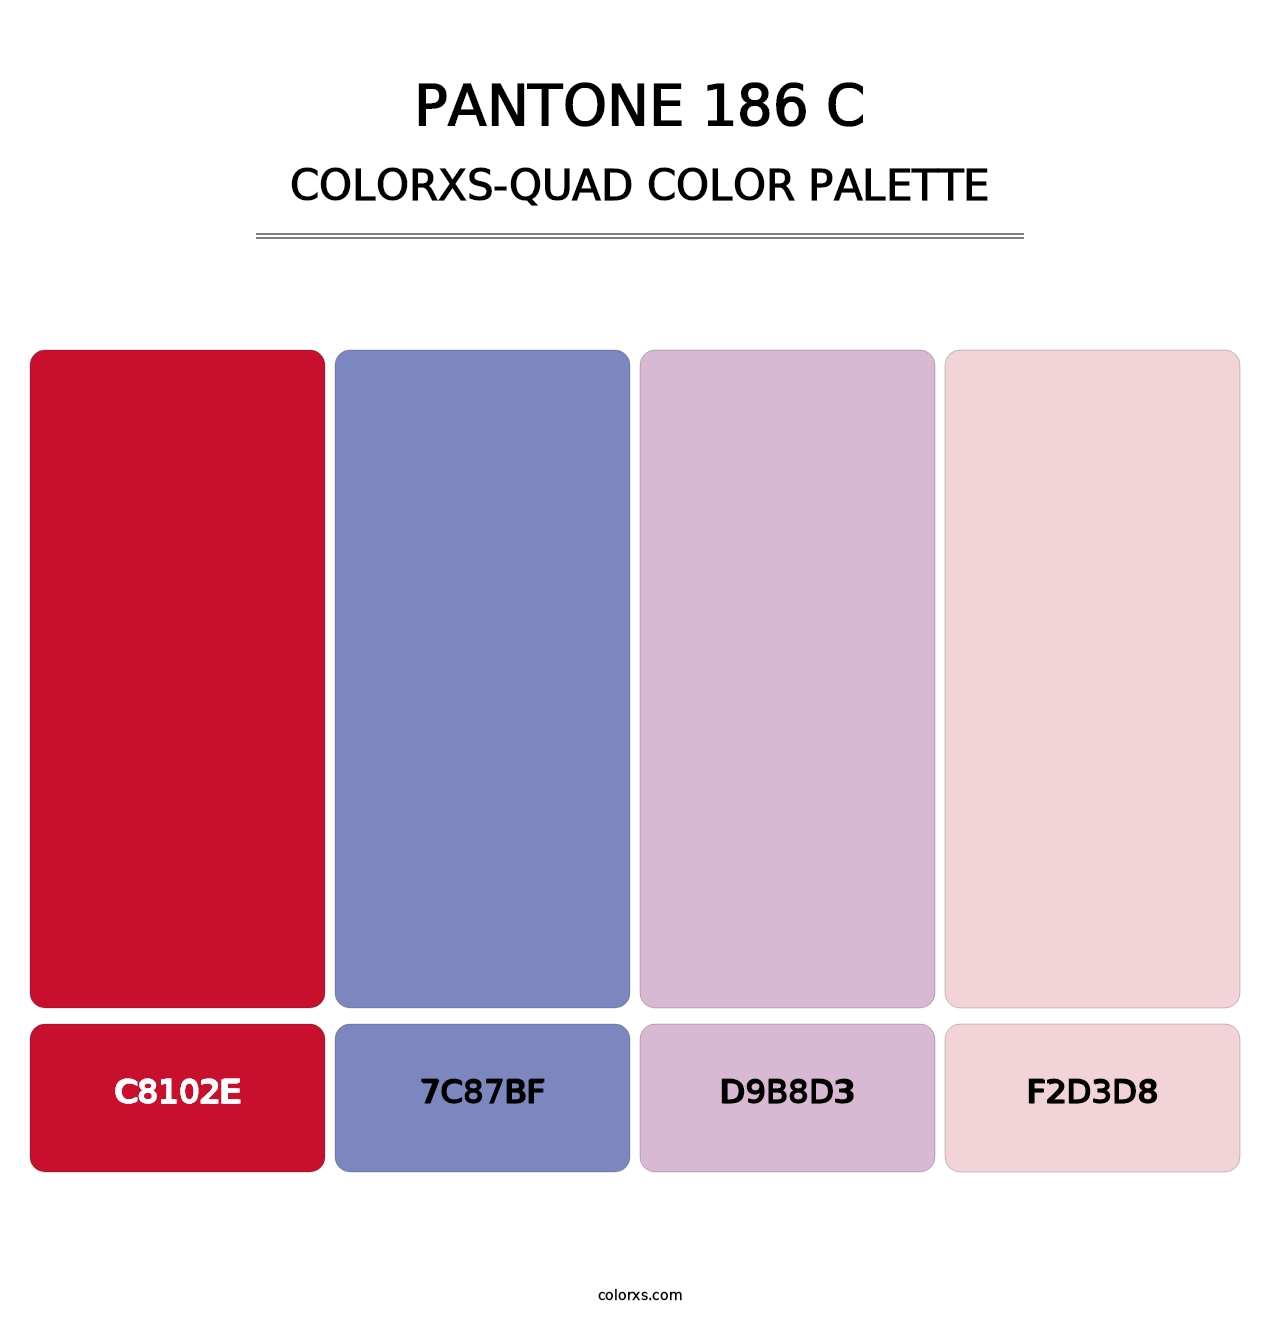 PANTONE 186 C - Colorxs Quad Palette